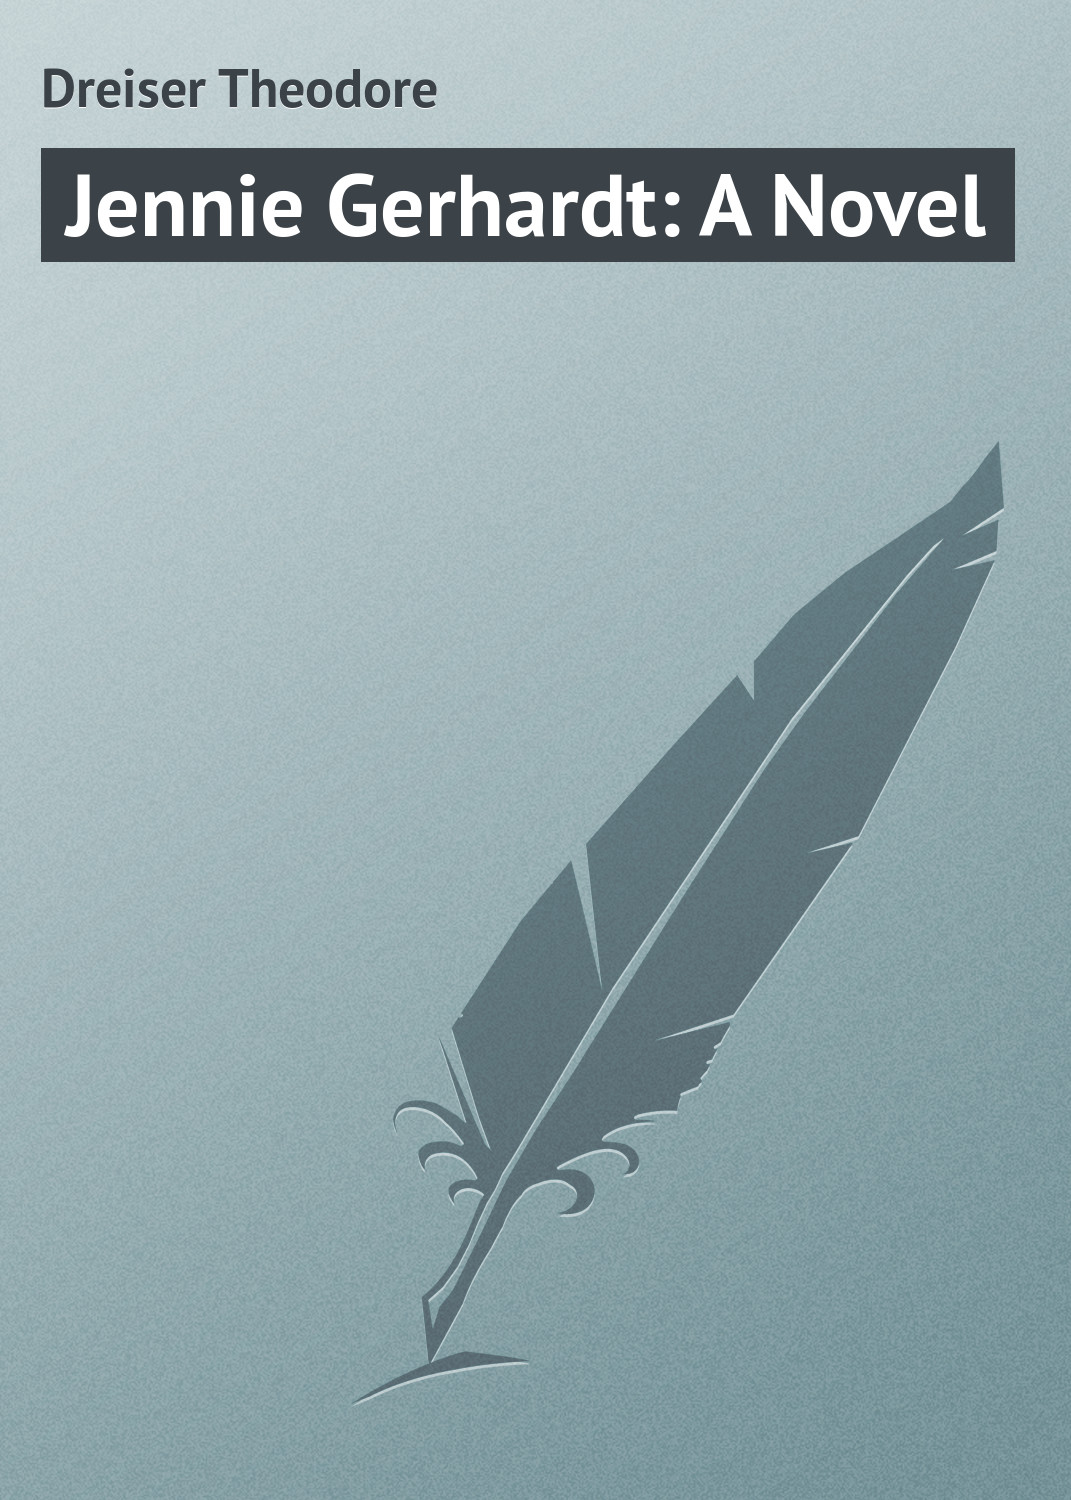 Книга Jennie Gerhardt: A Novel из серии , созданная Theodore Dreiser, может относится к жанру Зарубежная классика, Зарубежные любовные романы. Стоимость электронной книги Jennie Gerhardt: A Novel с идентификатором 23155163 составляет 5.99 руб.